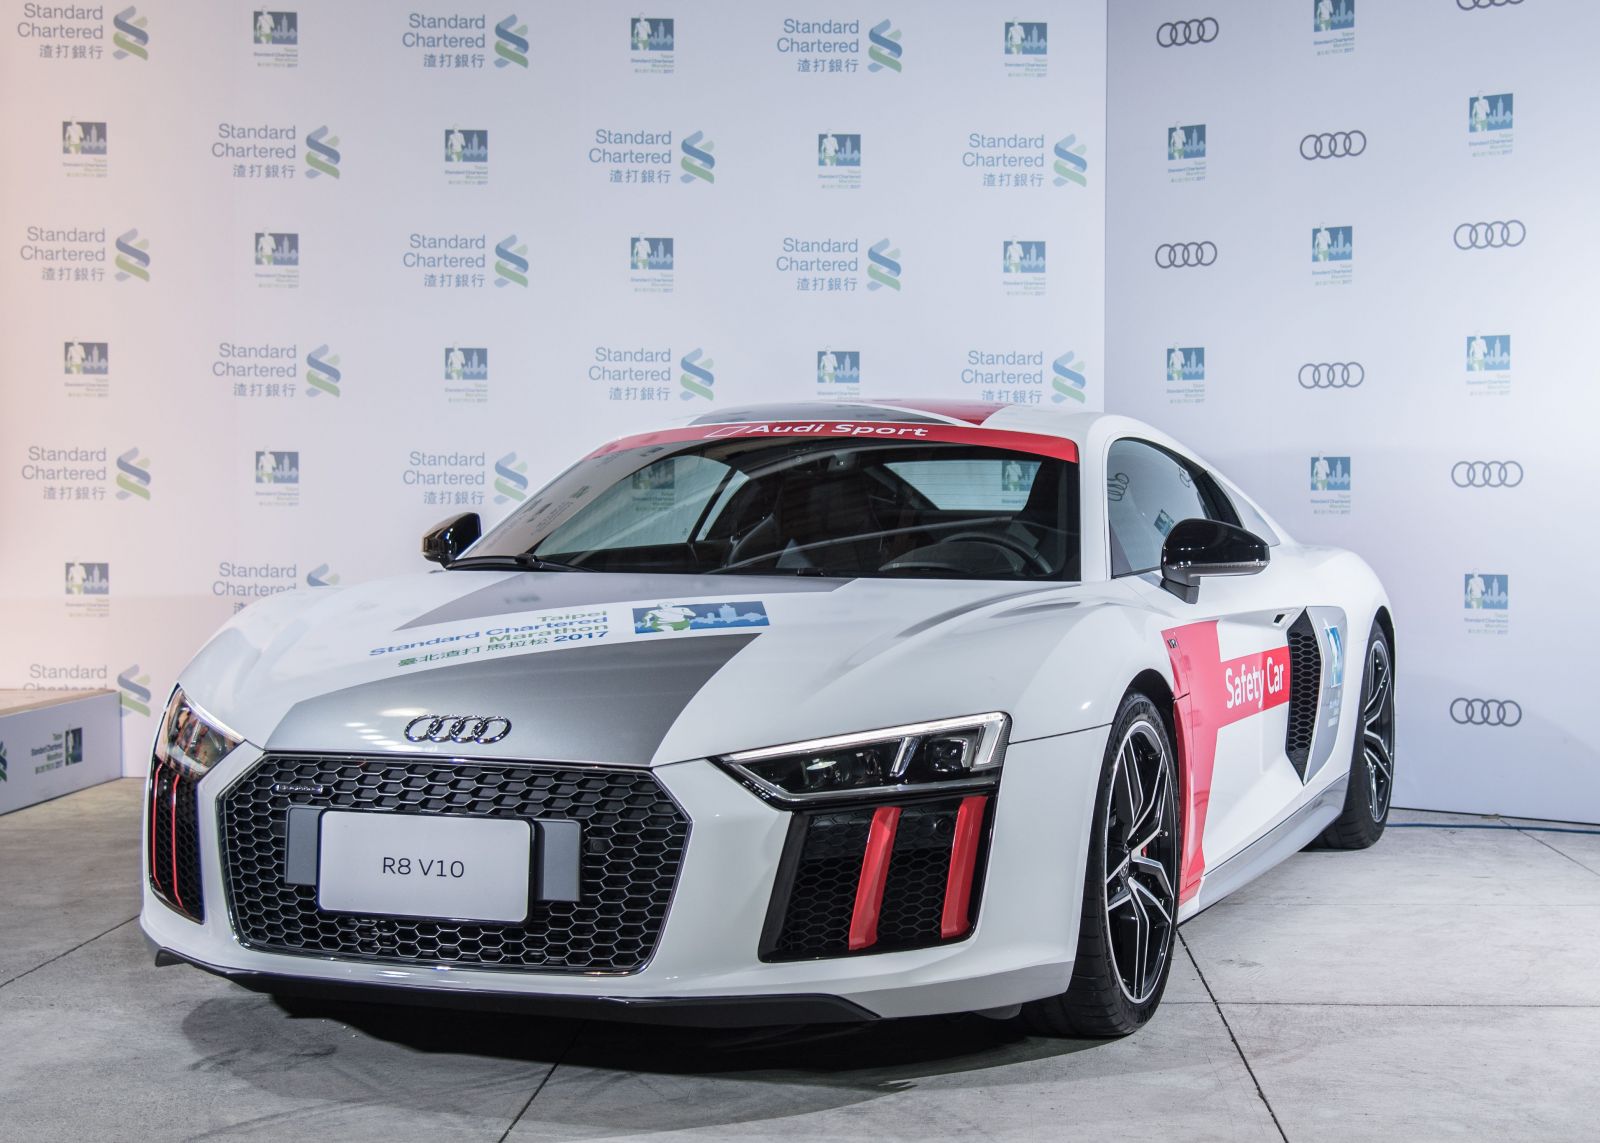 價值千萬的Audi Sport旗艦超跑Audi R8做為本次賽事領跑車。